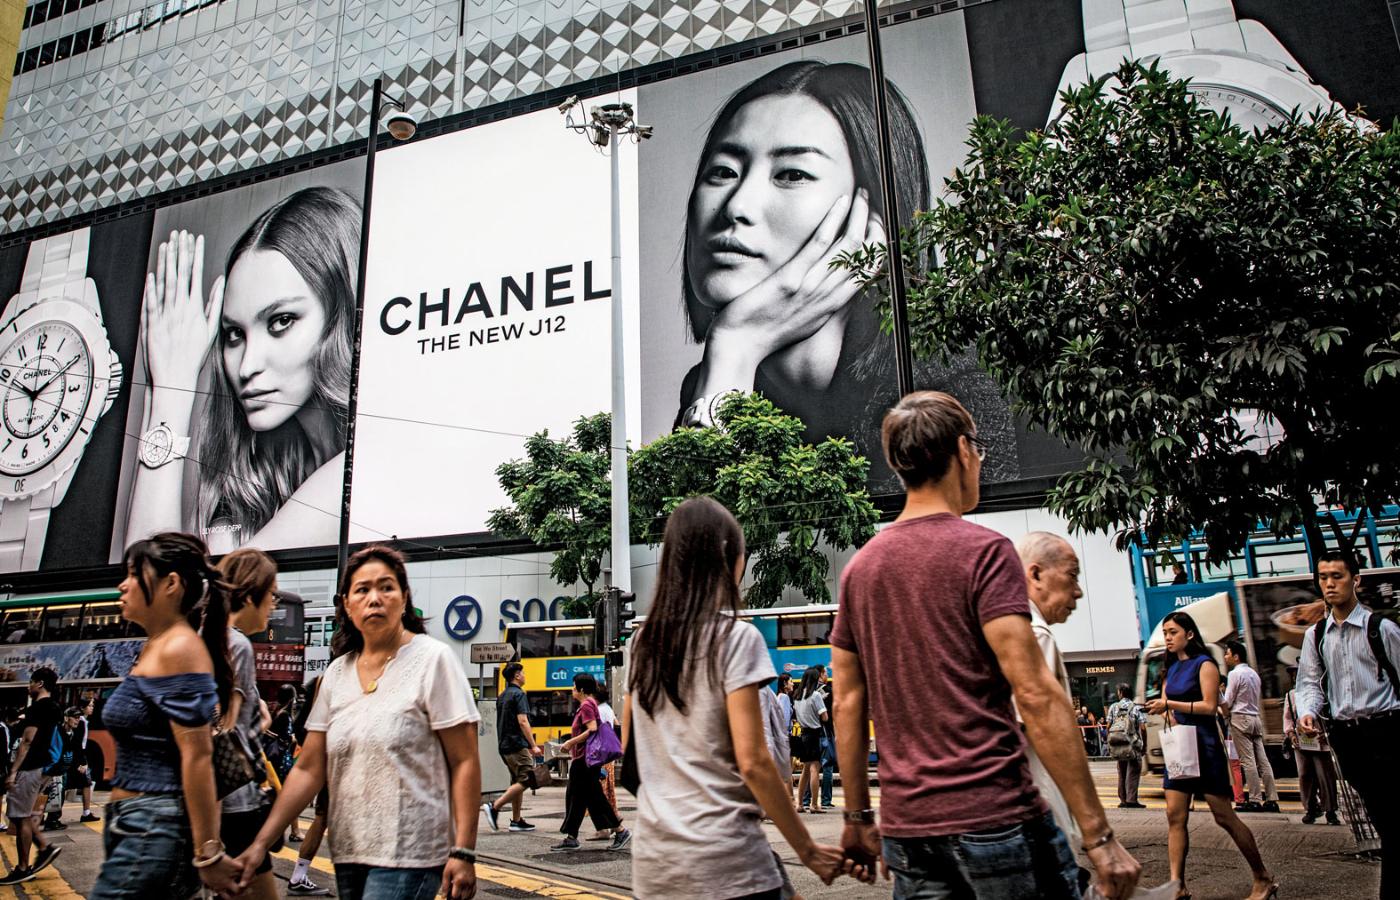 Chiński system ocen dotyczy również świata biznesu. Wypowiedzi prezesów czy działania reklamowe obniżają oceny firm działających na rynku. Na fotografii: Hongkong, handlowa ulica Causeway Bay.